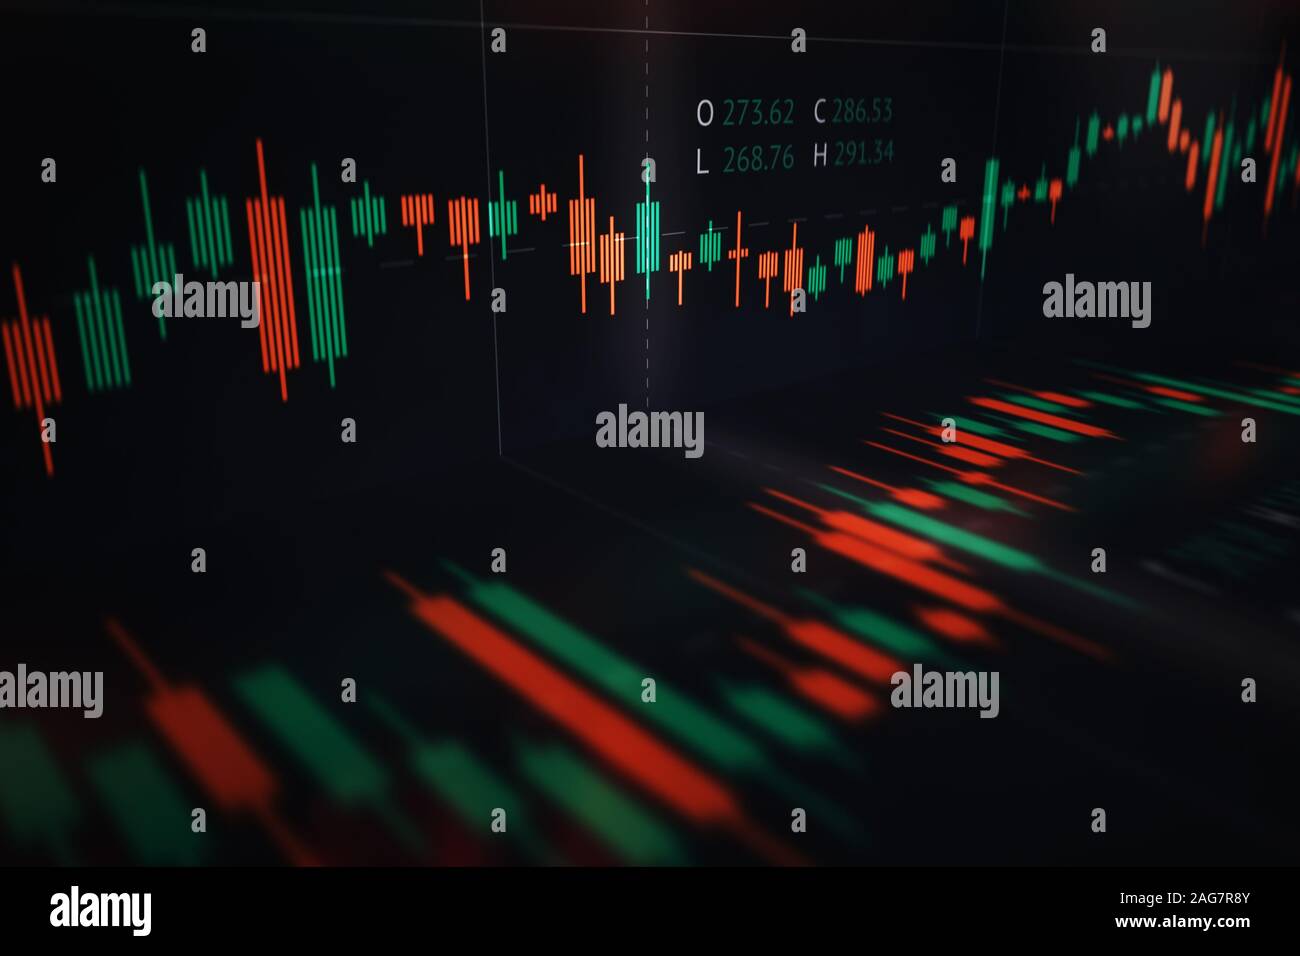 Finanzielle Candlestick Chart angezeigte Marktdaten mit Öffnen, Schließen, niedrige und hohe Preise im Laufe der Zeit Stockfoto